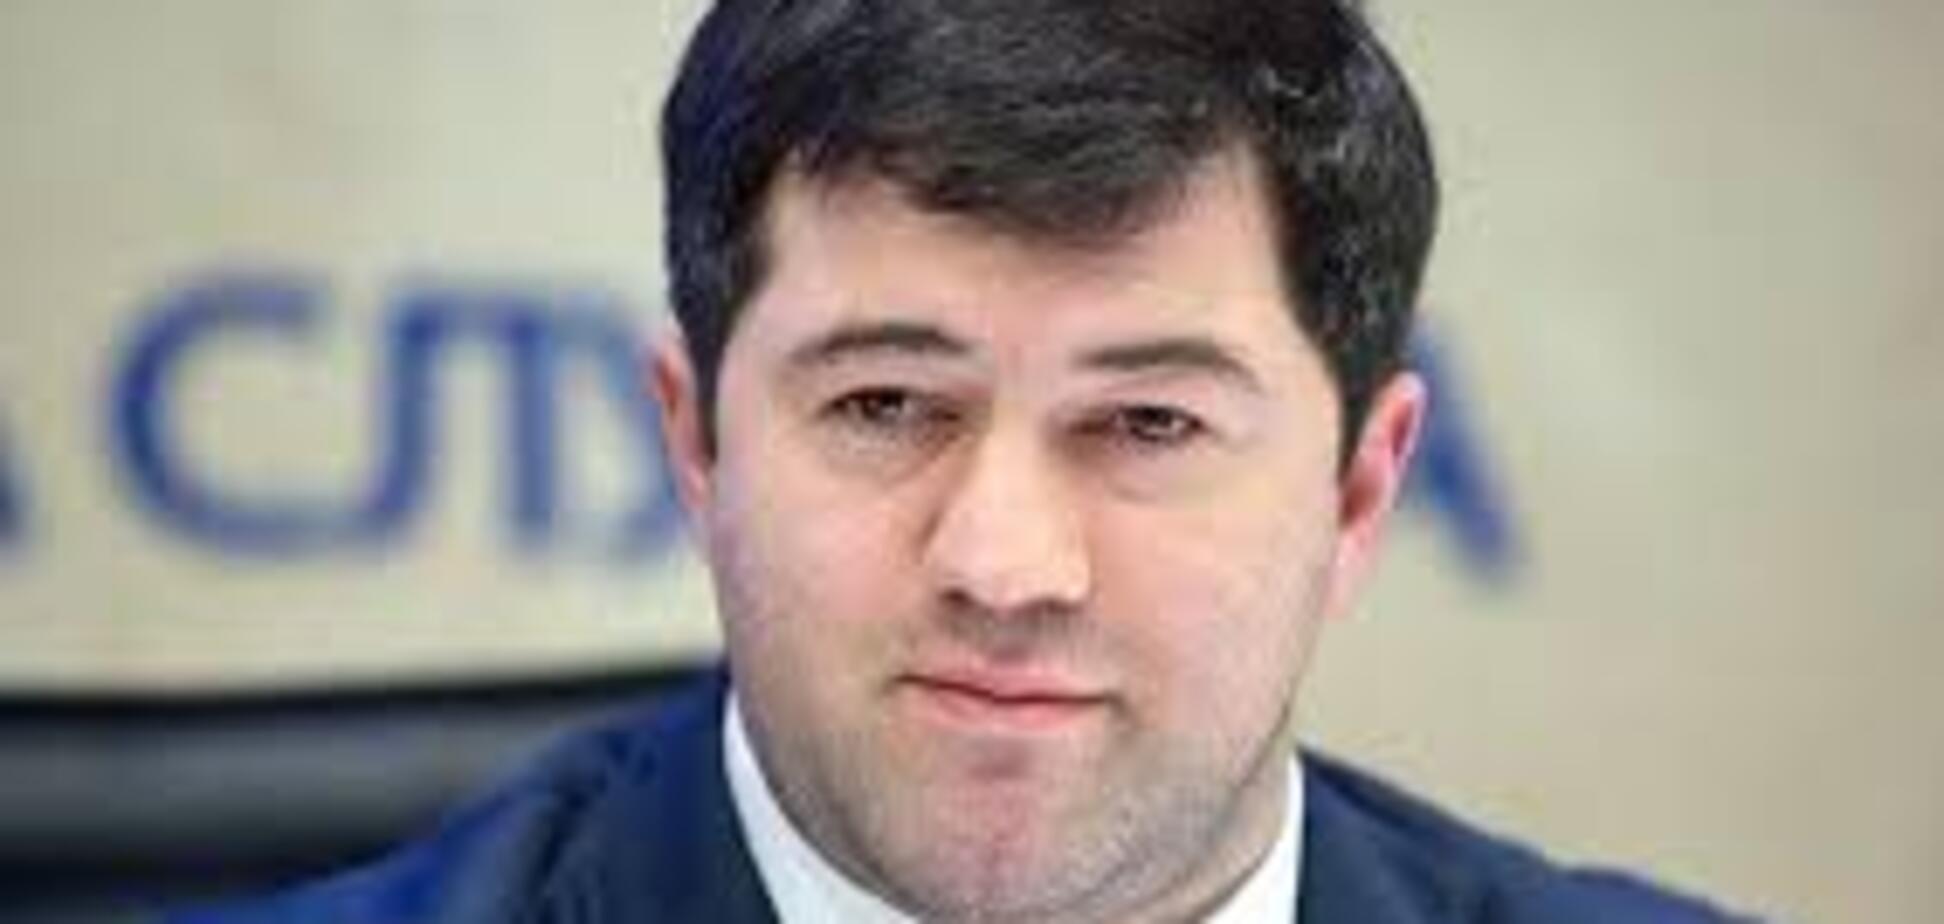 Сторона обвинения нарочно затягивает процесс рассмотрения дела - Насиров